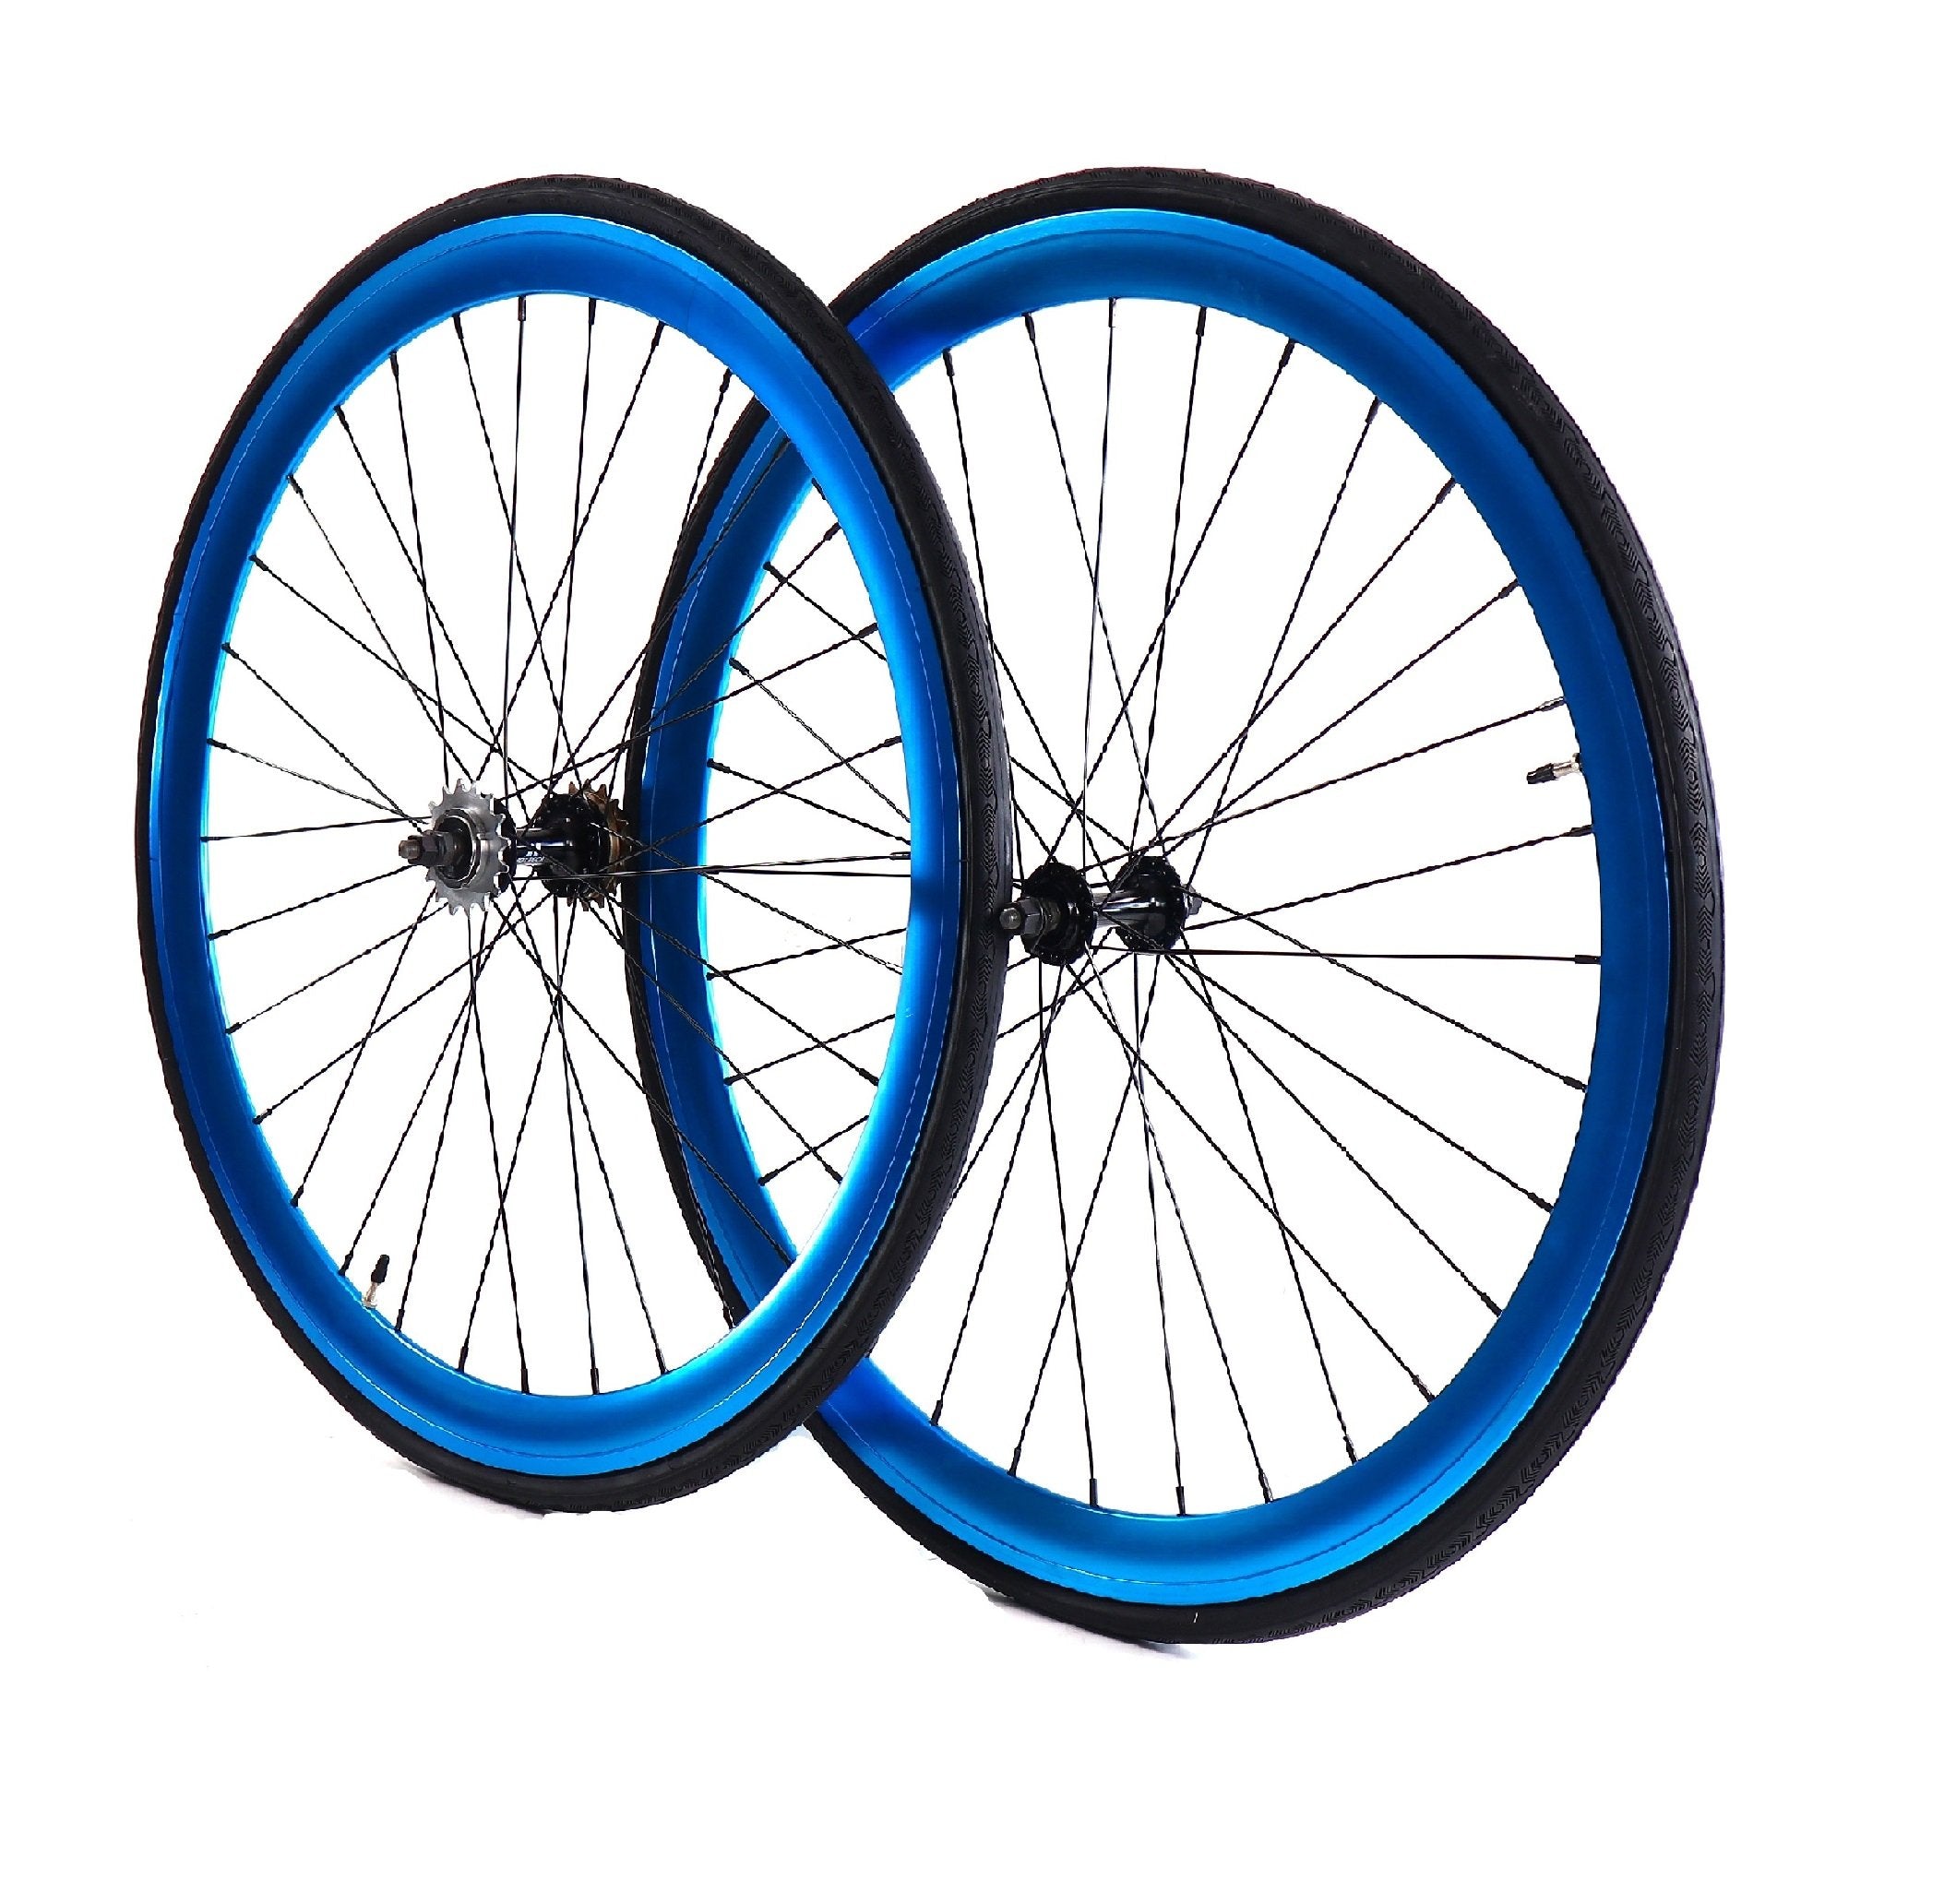 Wheelset - Blue Anodized 700c